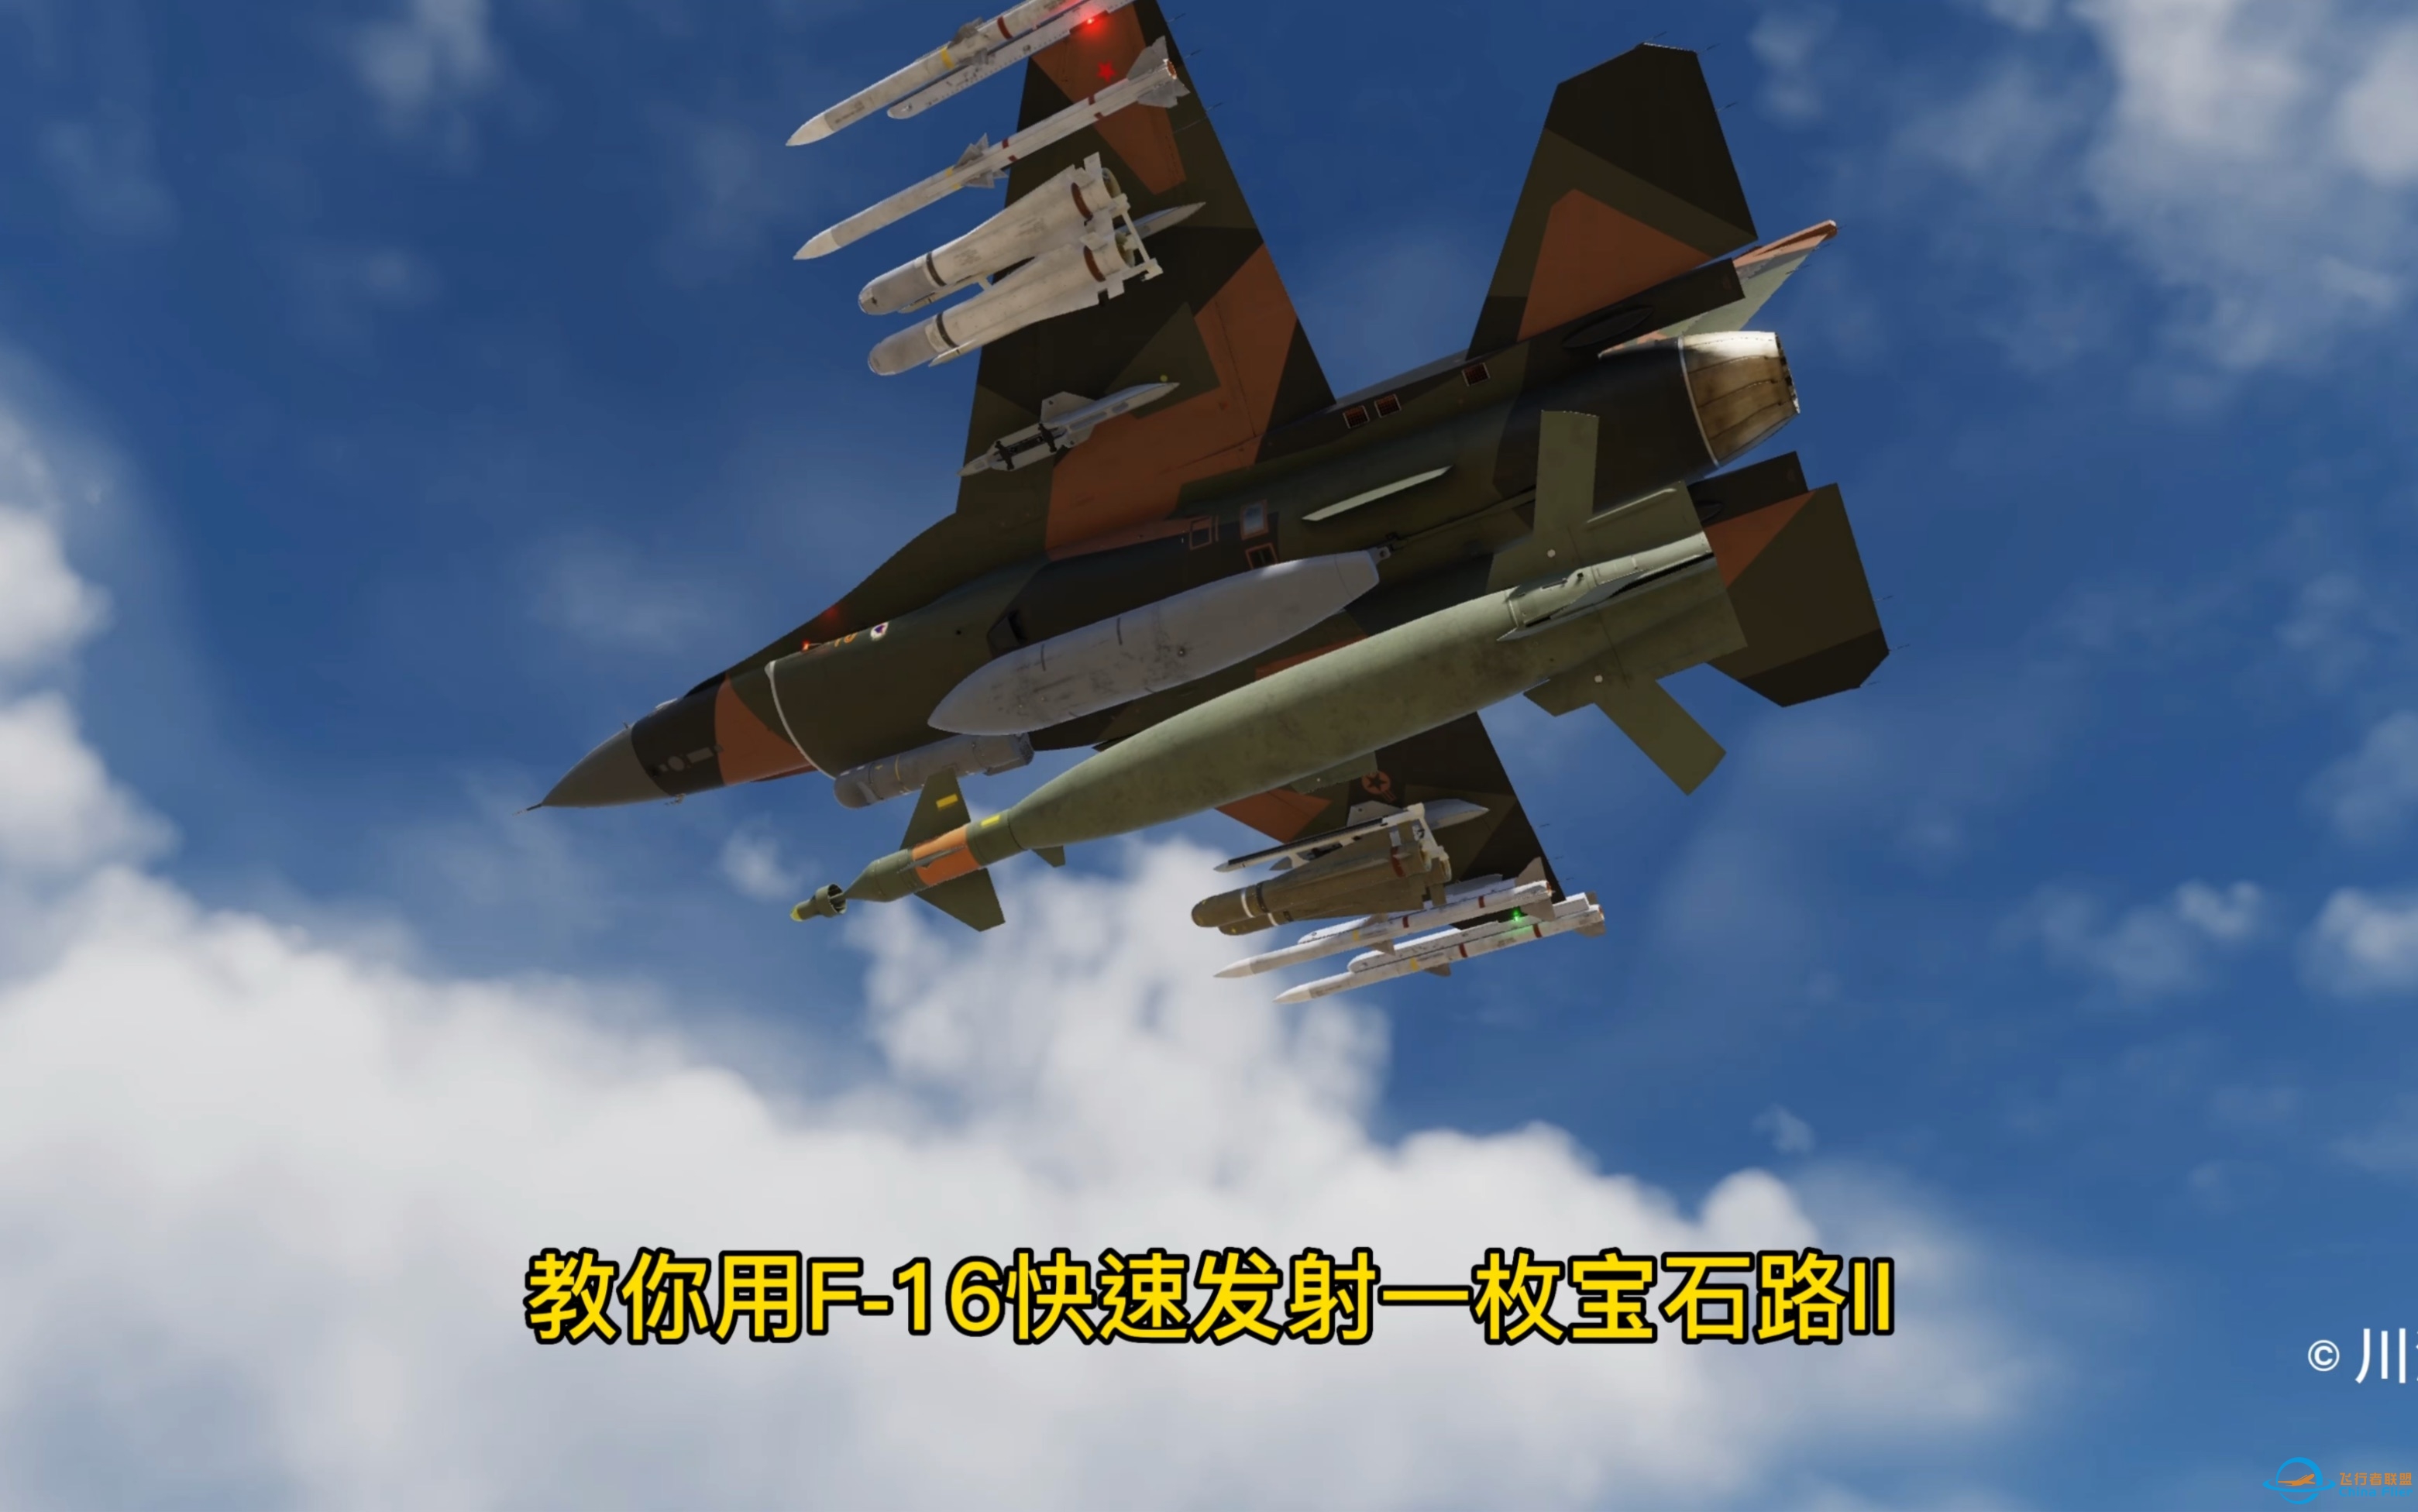 第23集：dcs world 教你用F16快速发射一枚宝石路II激光制导炸弹。F16代号蝰蛇。-9460 